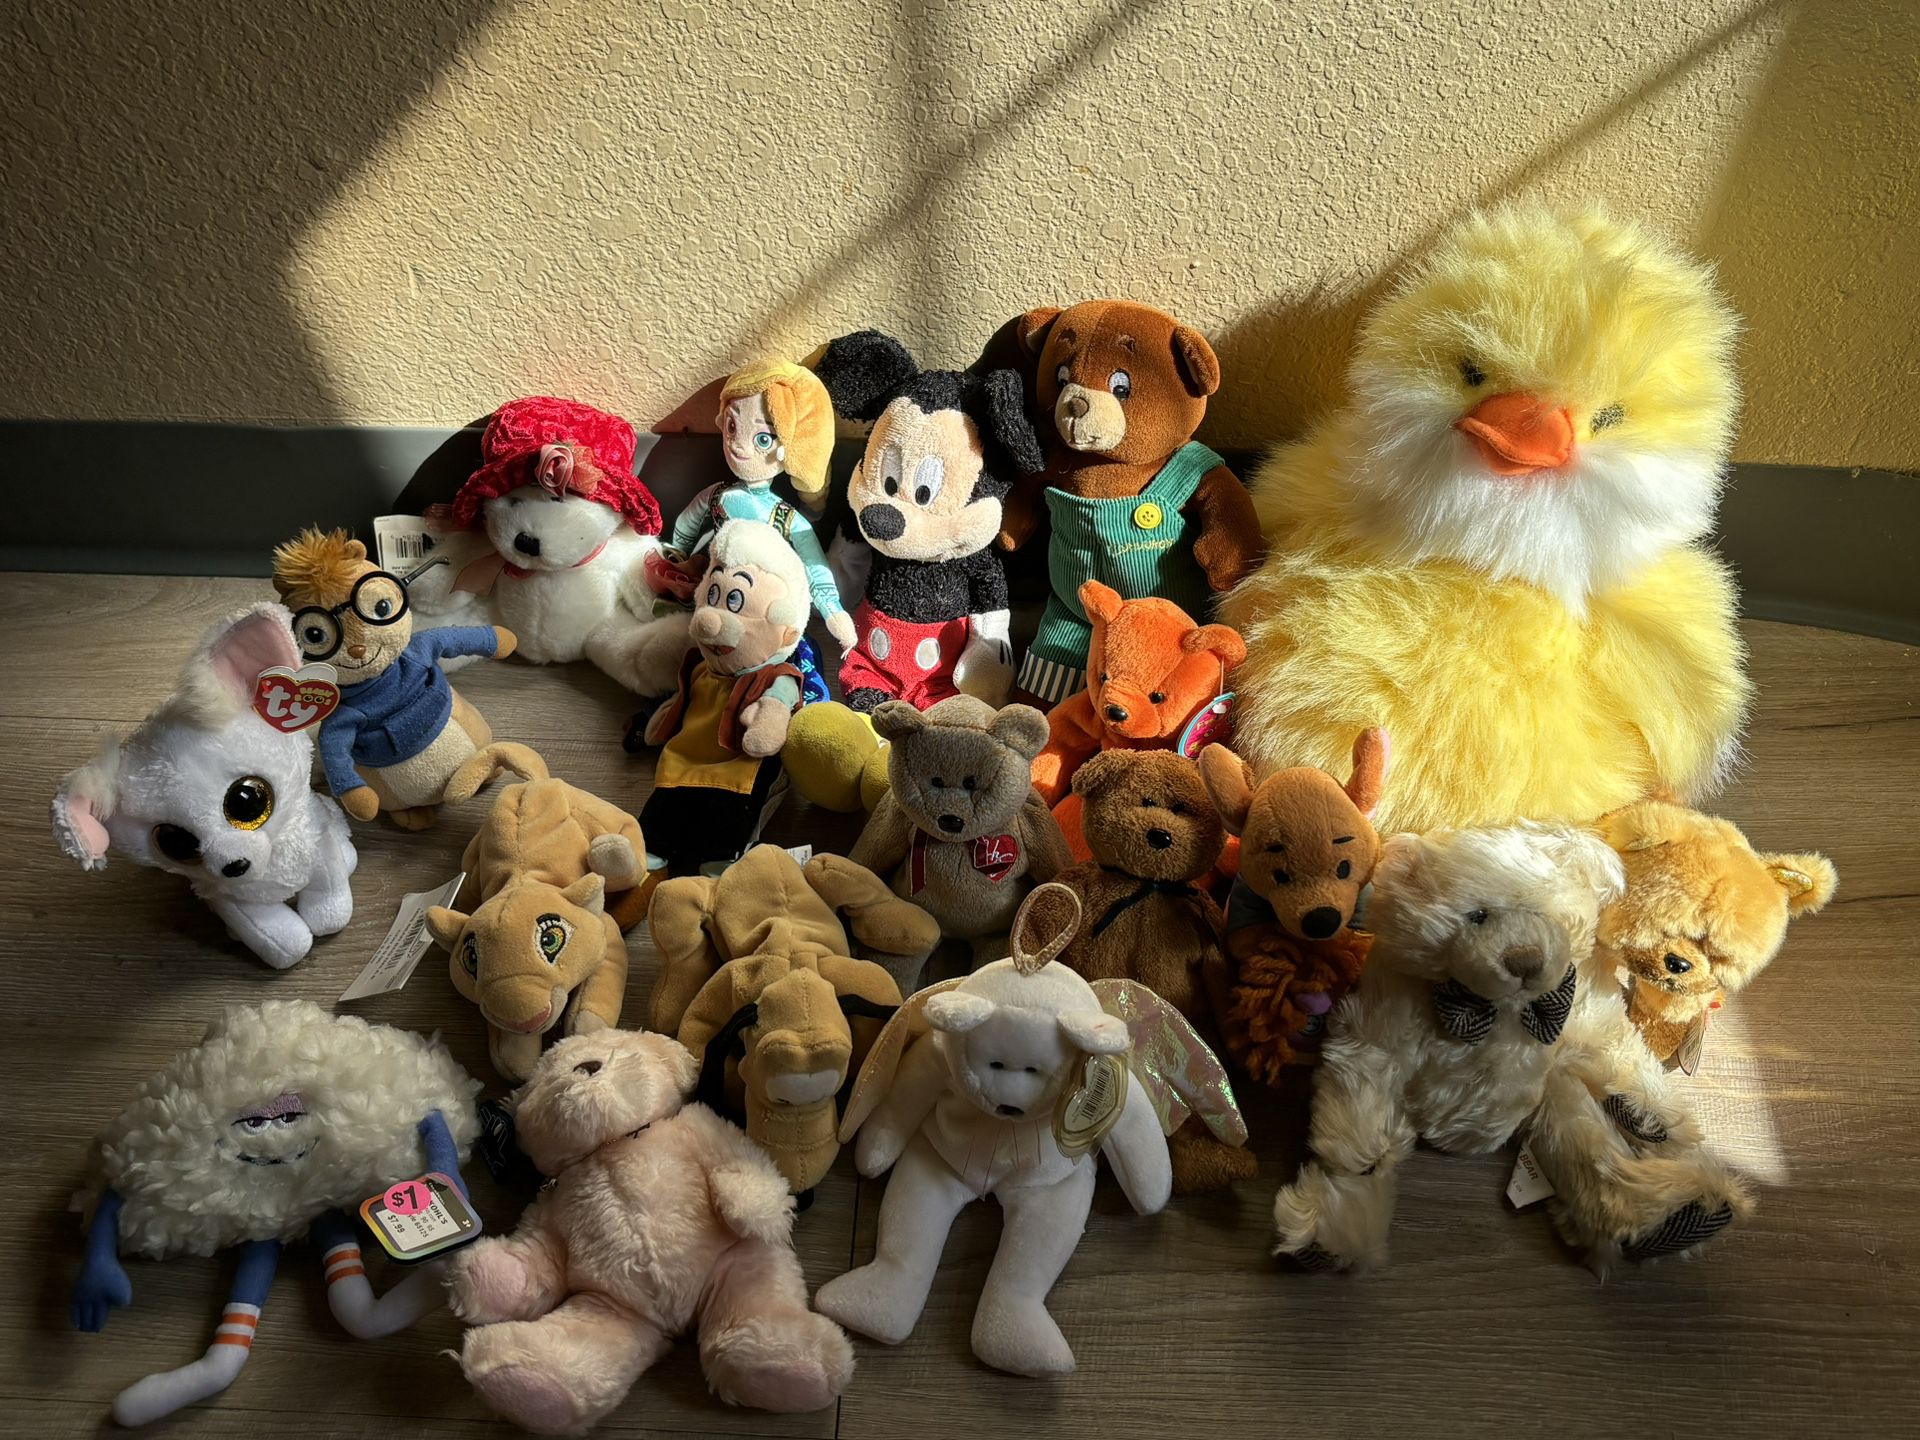 Bundle Of Stuffed Animals / Plushes